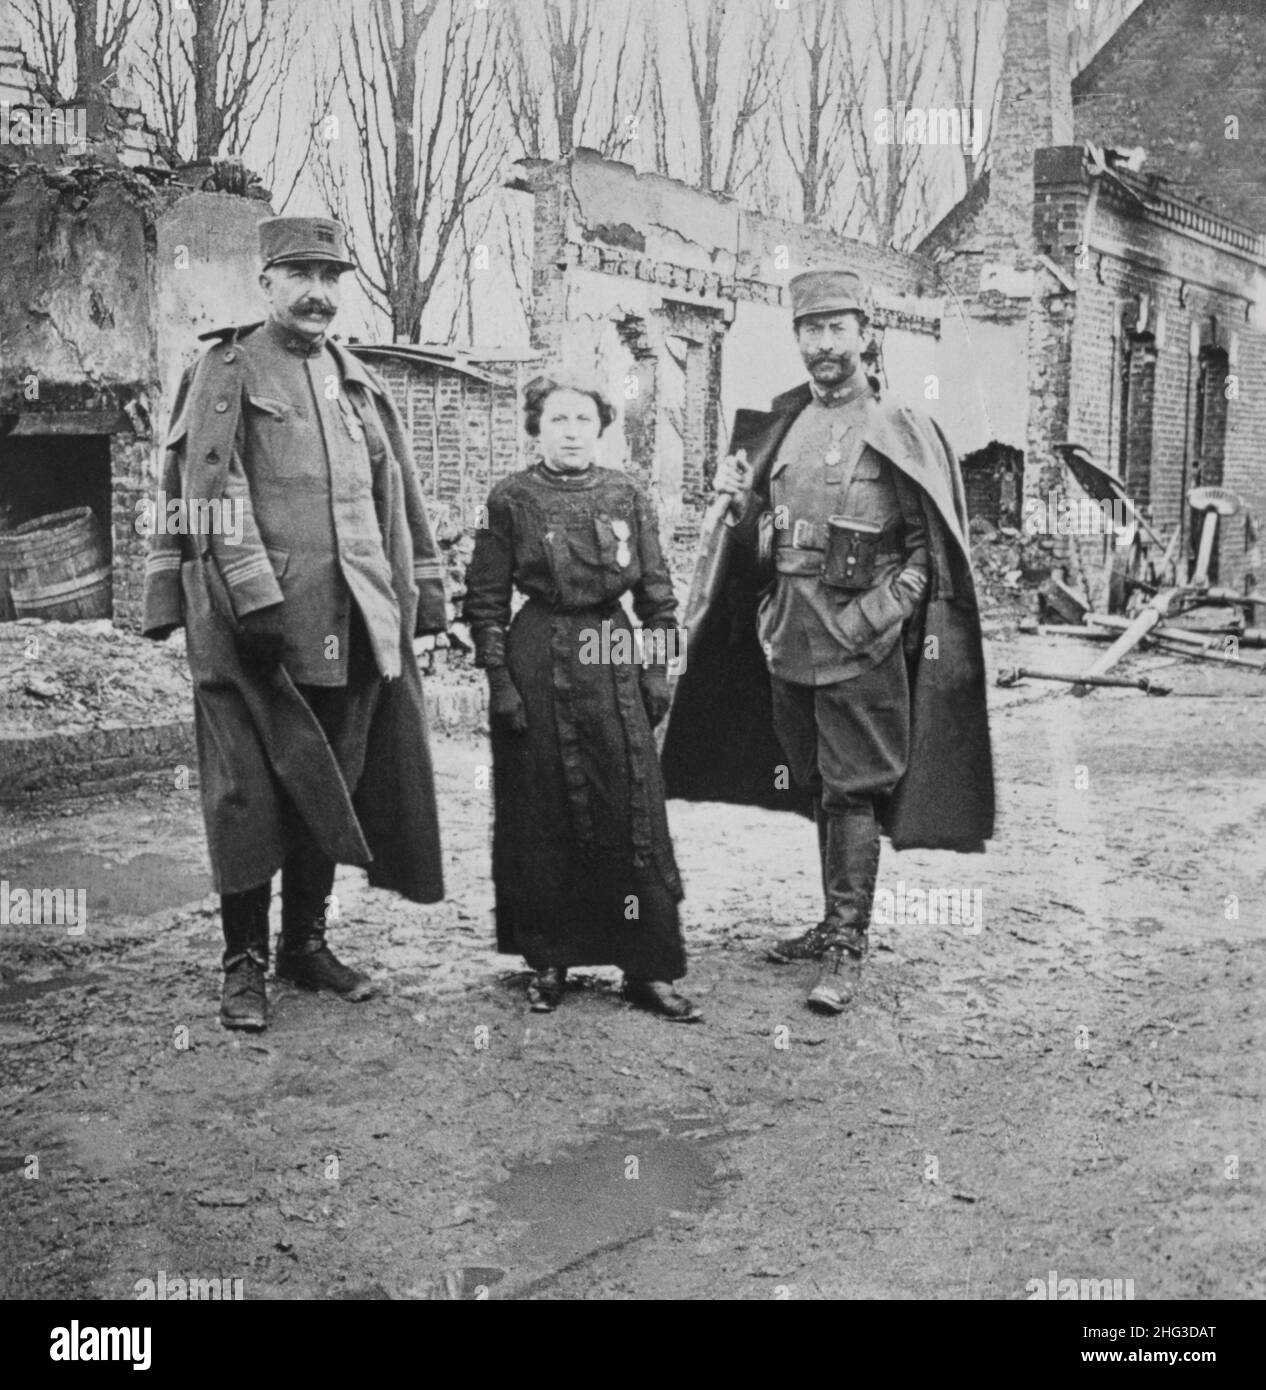 Archivfoto des Ersten Weltkriegs Ruiniertes Dorf von Edlusiers, Frankreich. M'lle Semmer schmückte sich für heldenhafte Aktionen unter Feuer. 1914-1918 Stockfoto